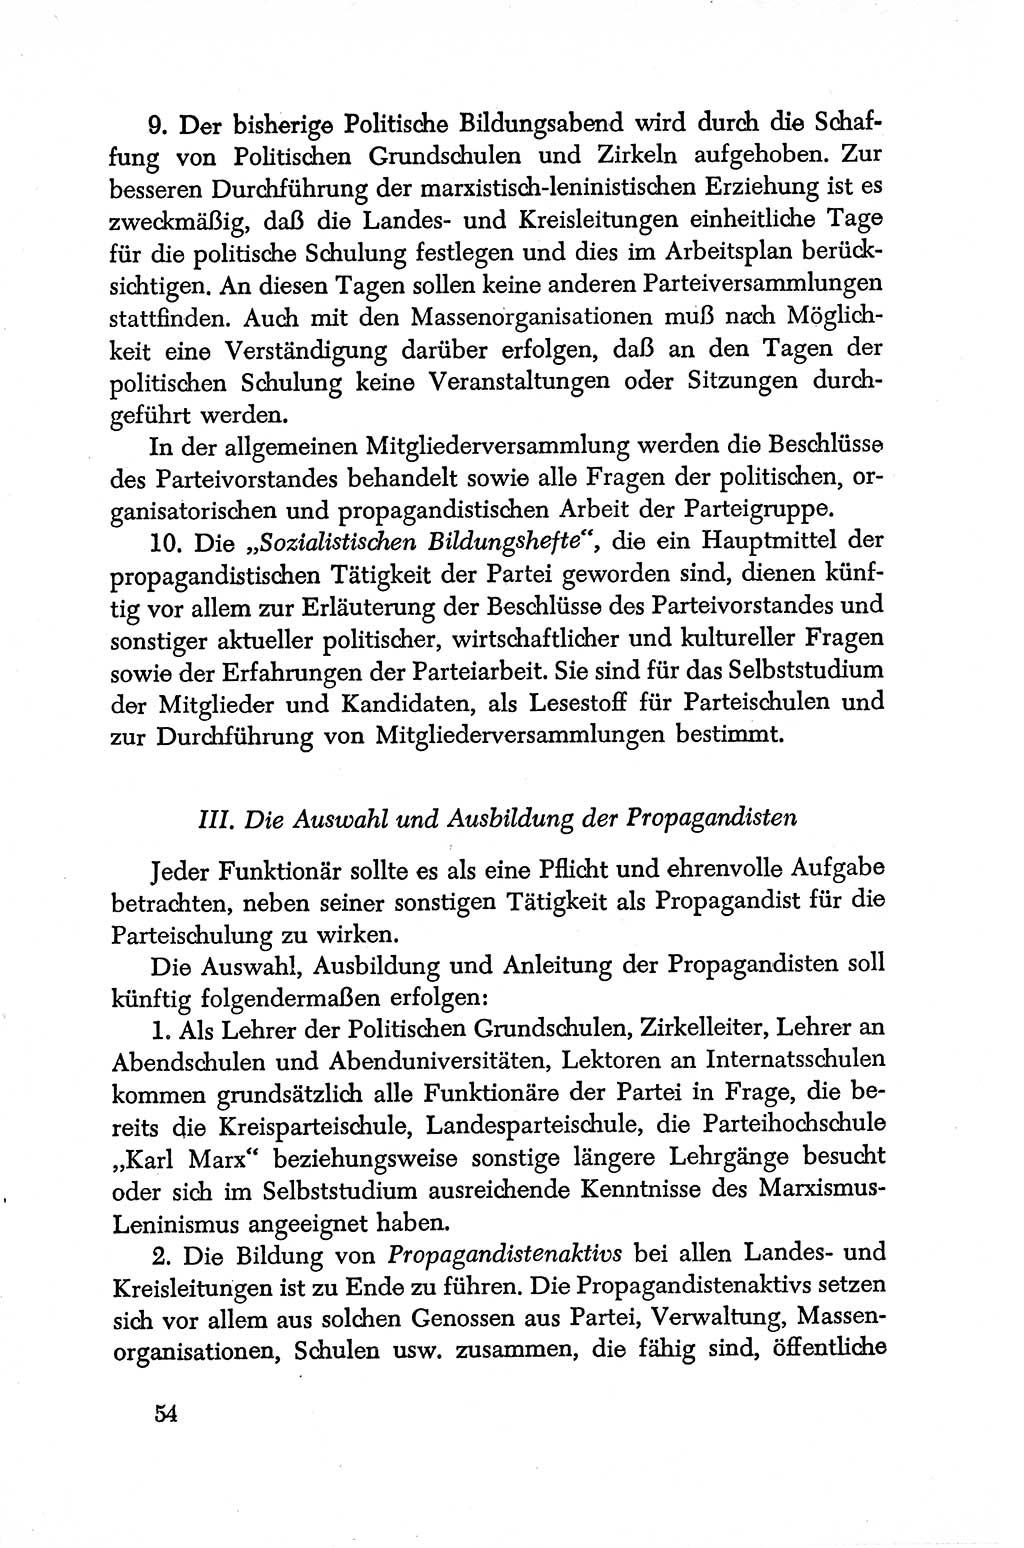 Dokumente der Sozialistischen Einheitspartei Deutschlands (SED) [Deutsche Demokratische Republik (DDR)] 1950-1952, Seite 54 (Dok. SED DDR 1950-1952, S. 54)